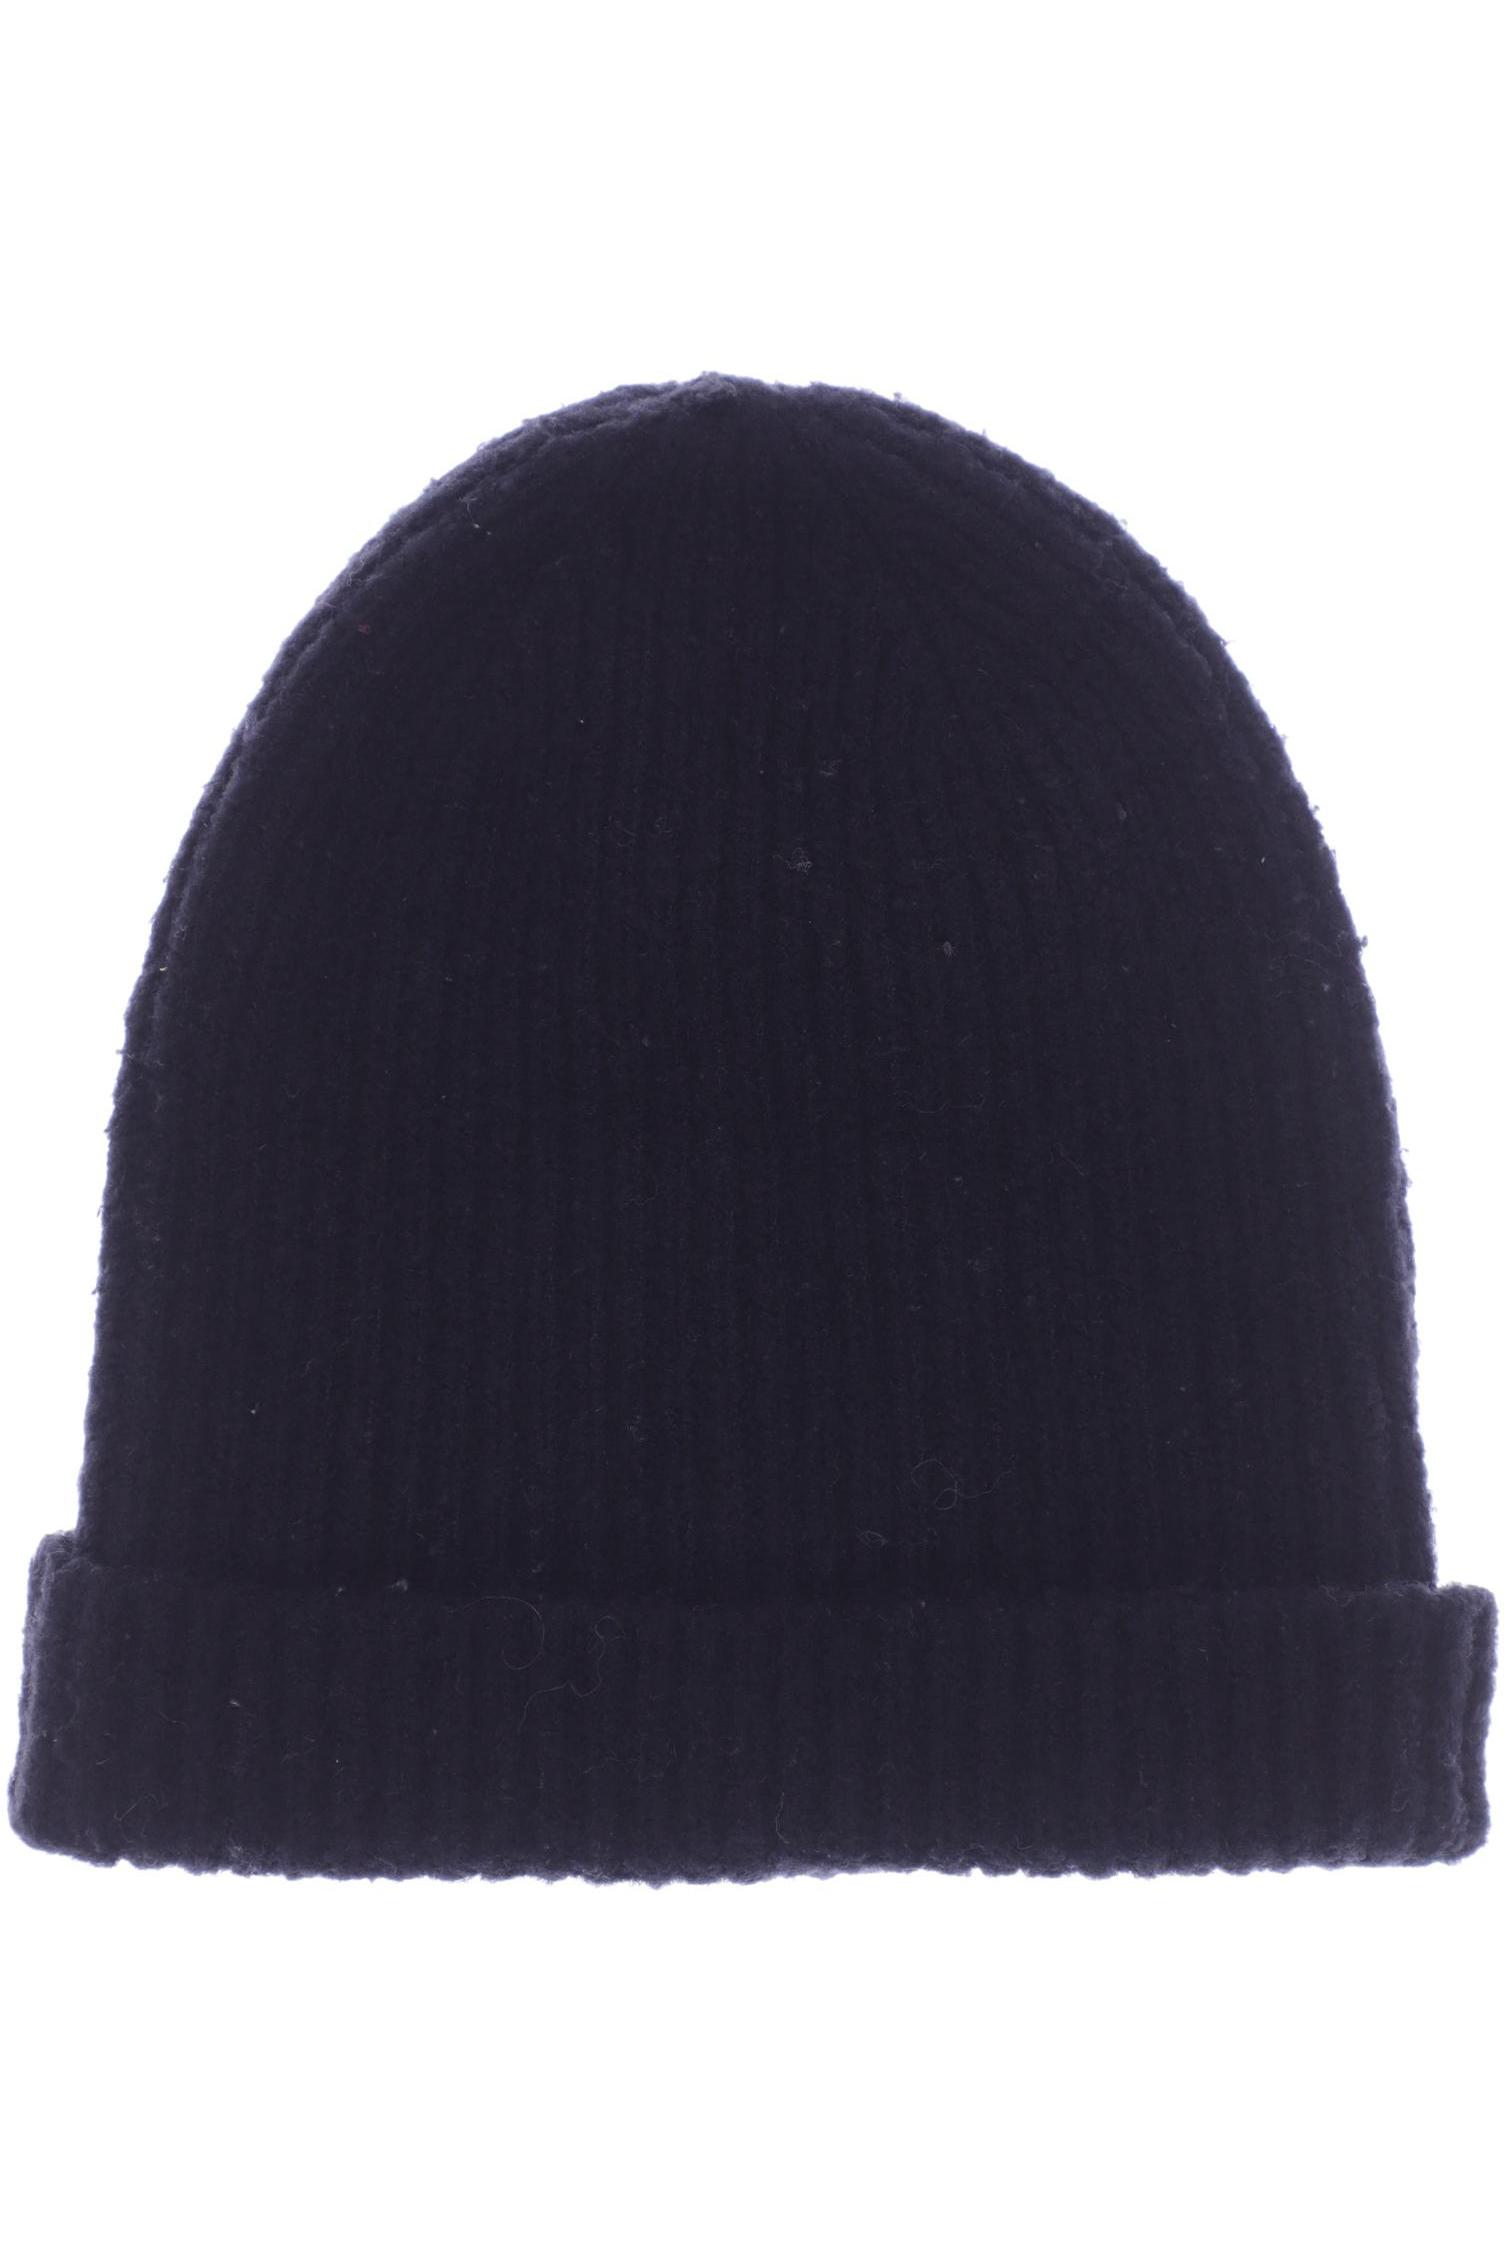 Rino&Pelle Damen Hut/Mütze, schwarz, Gr. uni von RINO&PELLE